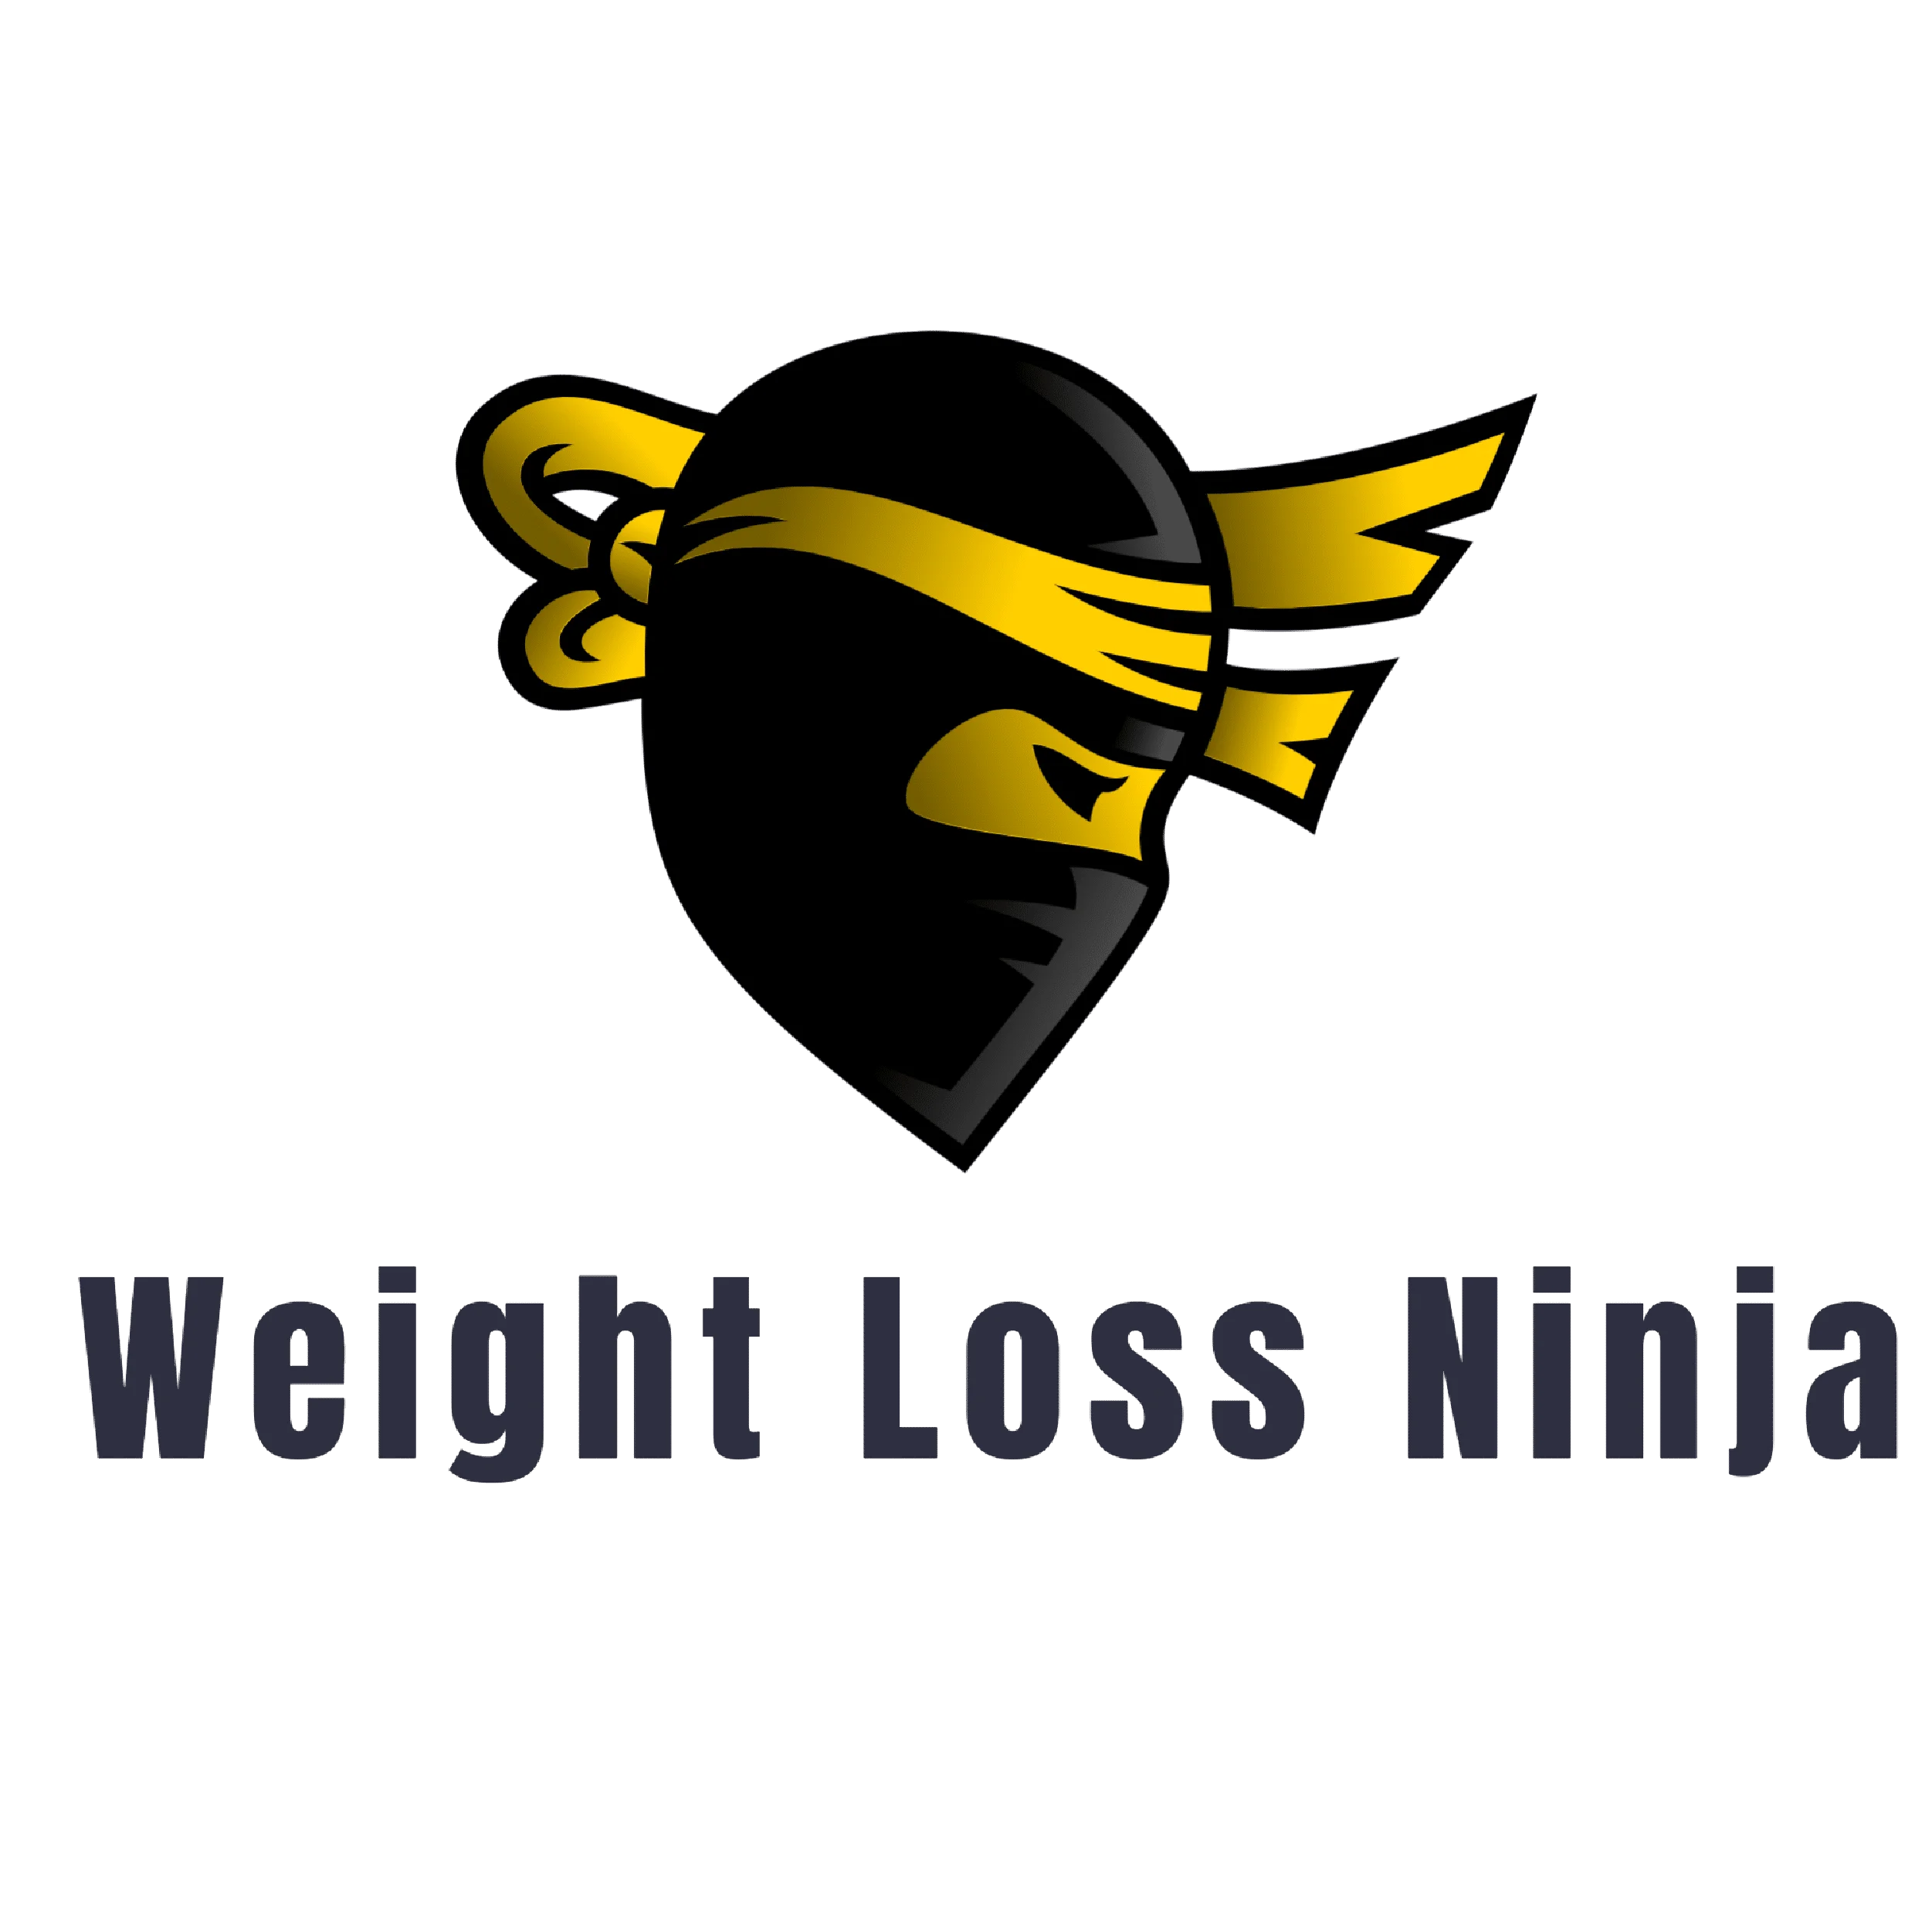 Weight Loss Ninja